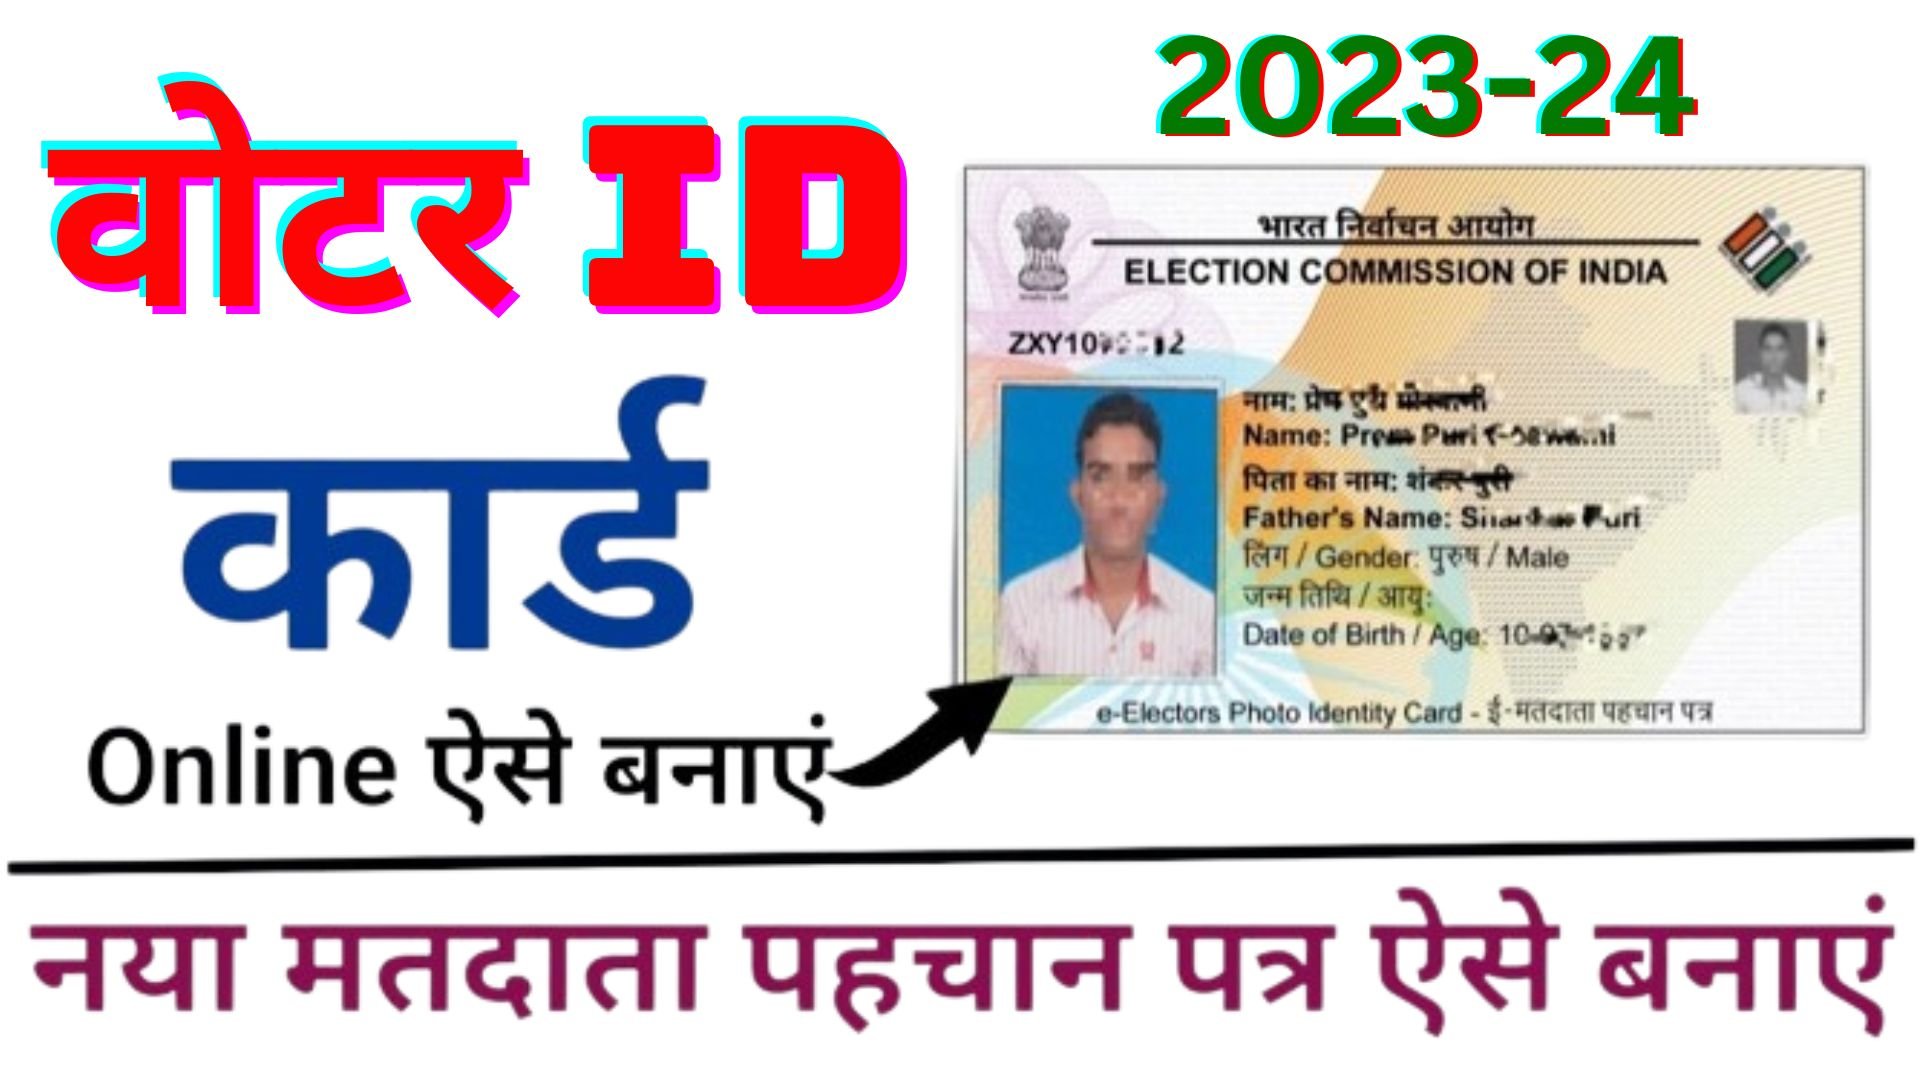 Voter id card online kaise mangaye 2023-24 : अब घर बैठे मंगवाए वोटर आईडी कार्ड नयी सर्विस शुरू जाने आवेदन का पूरा प्रोसेस